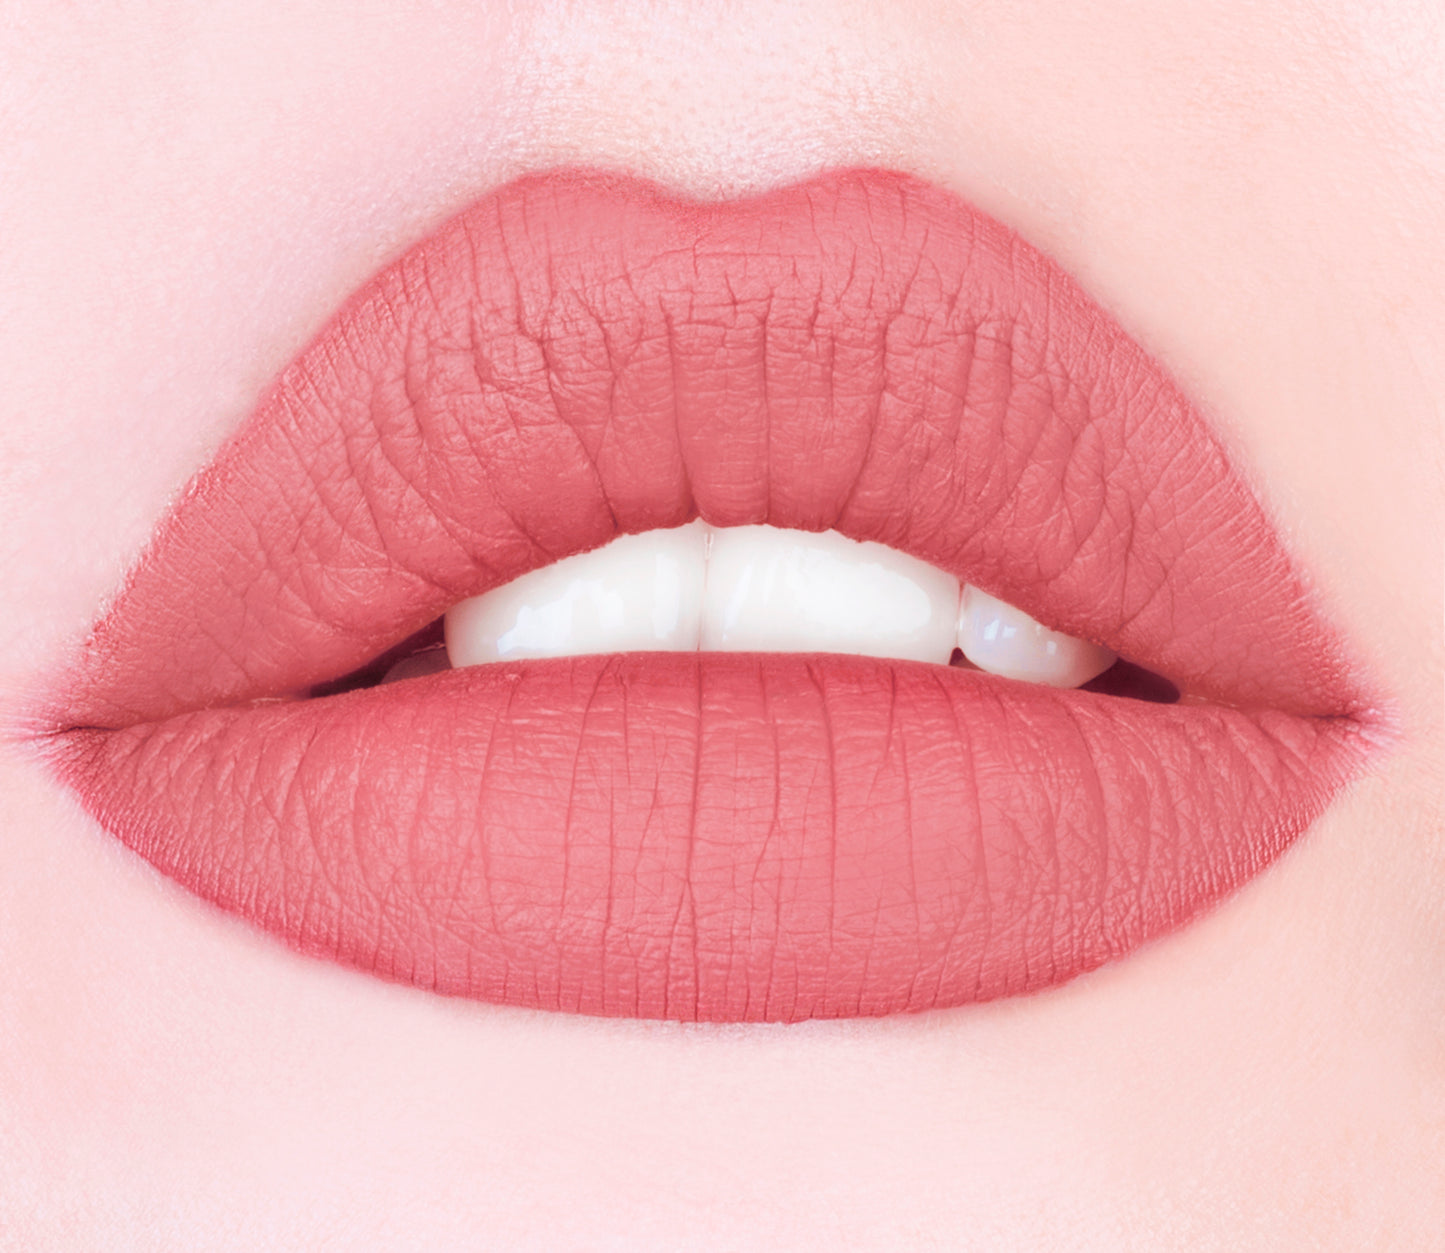 aden Creamy Velvet Lipstick